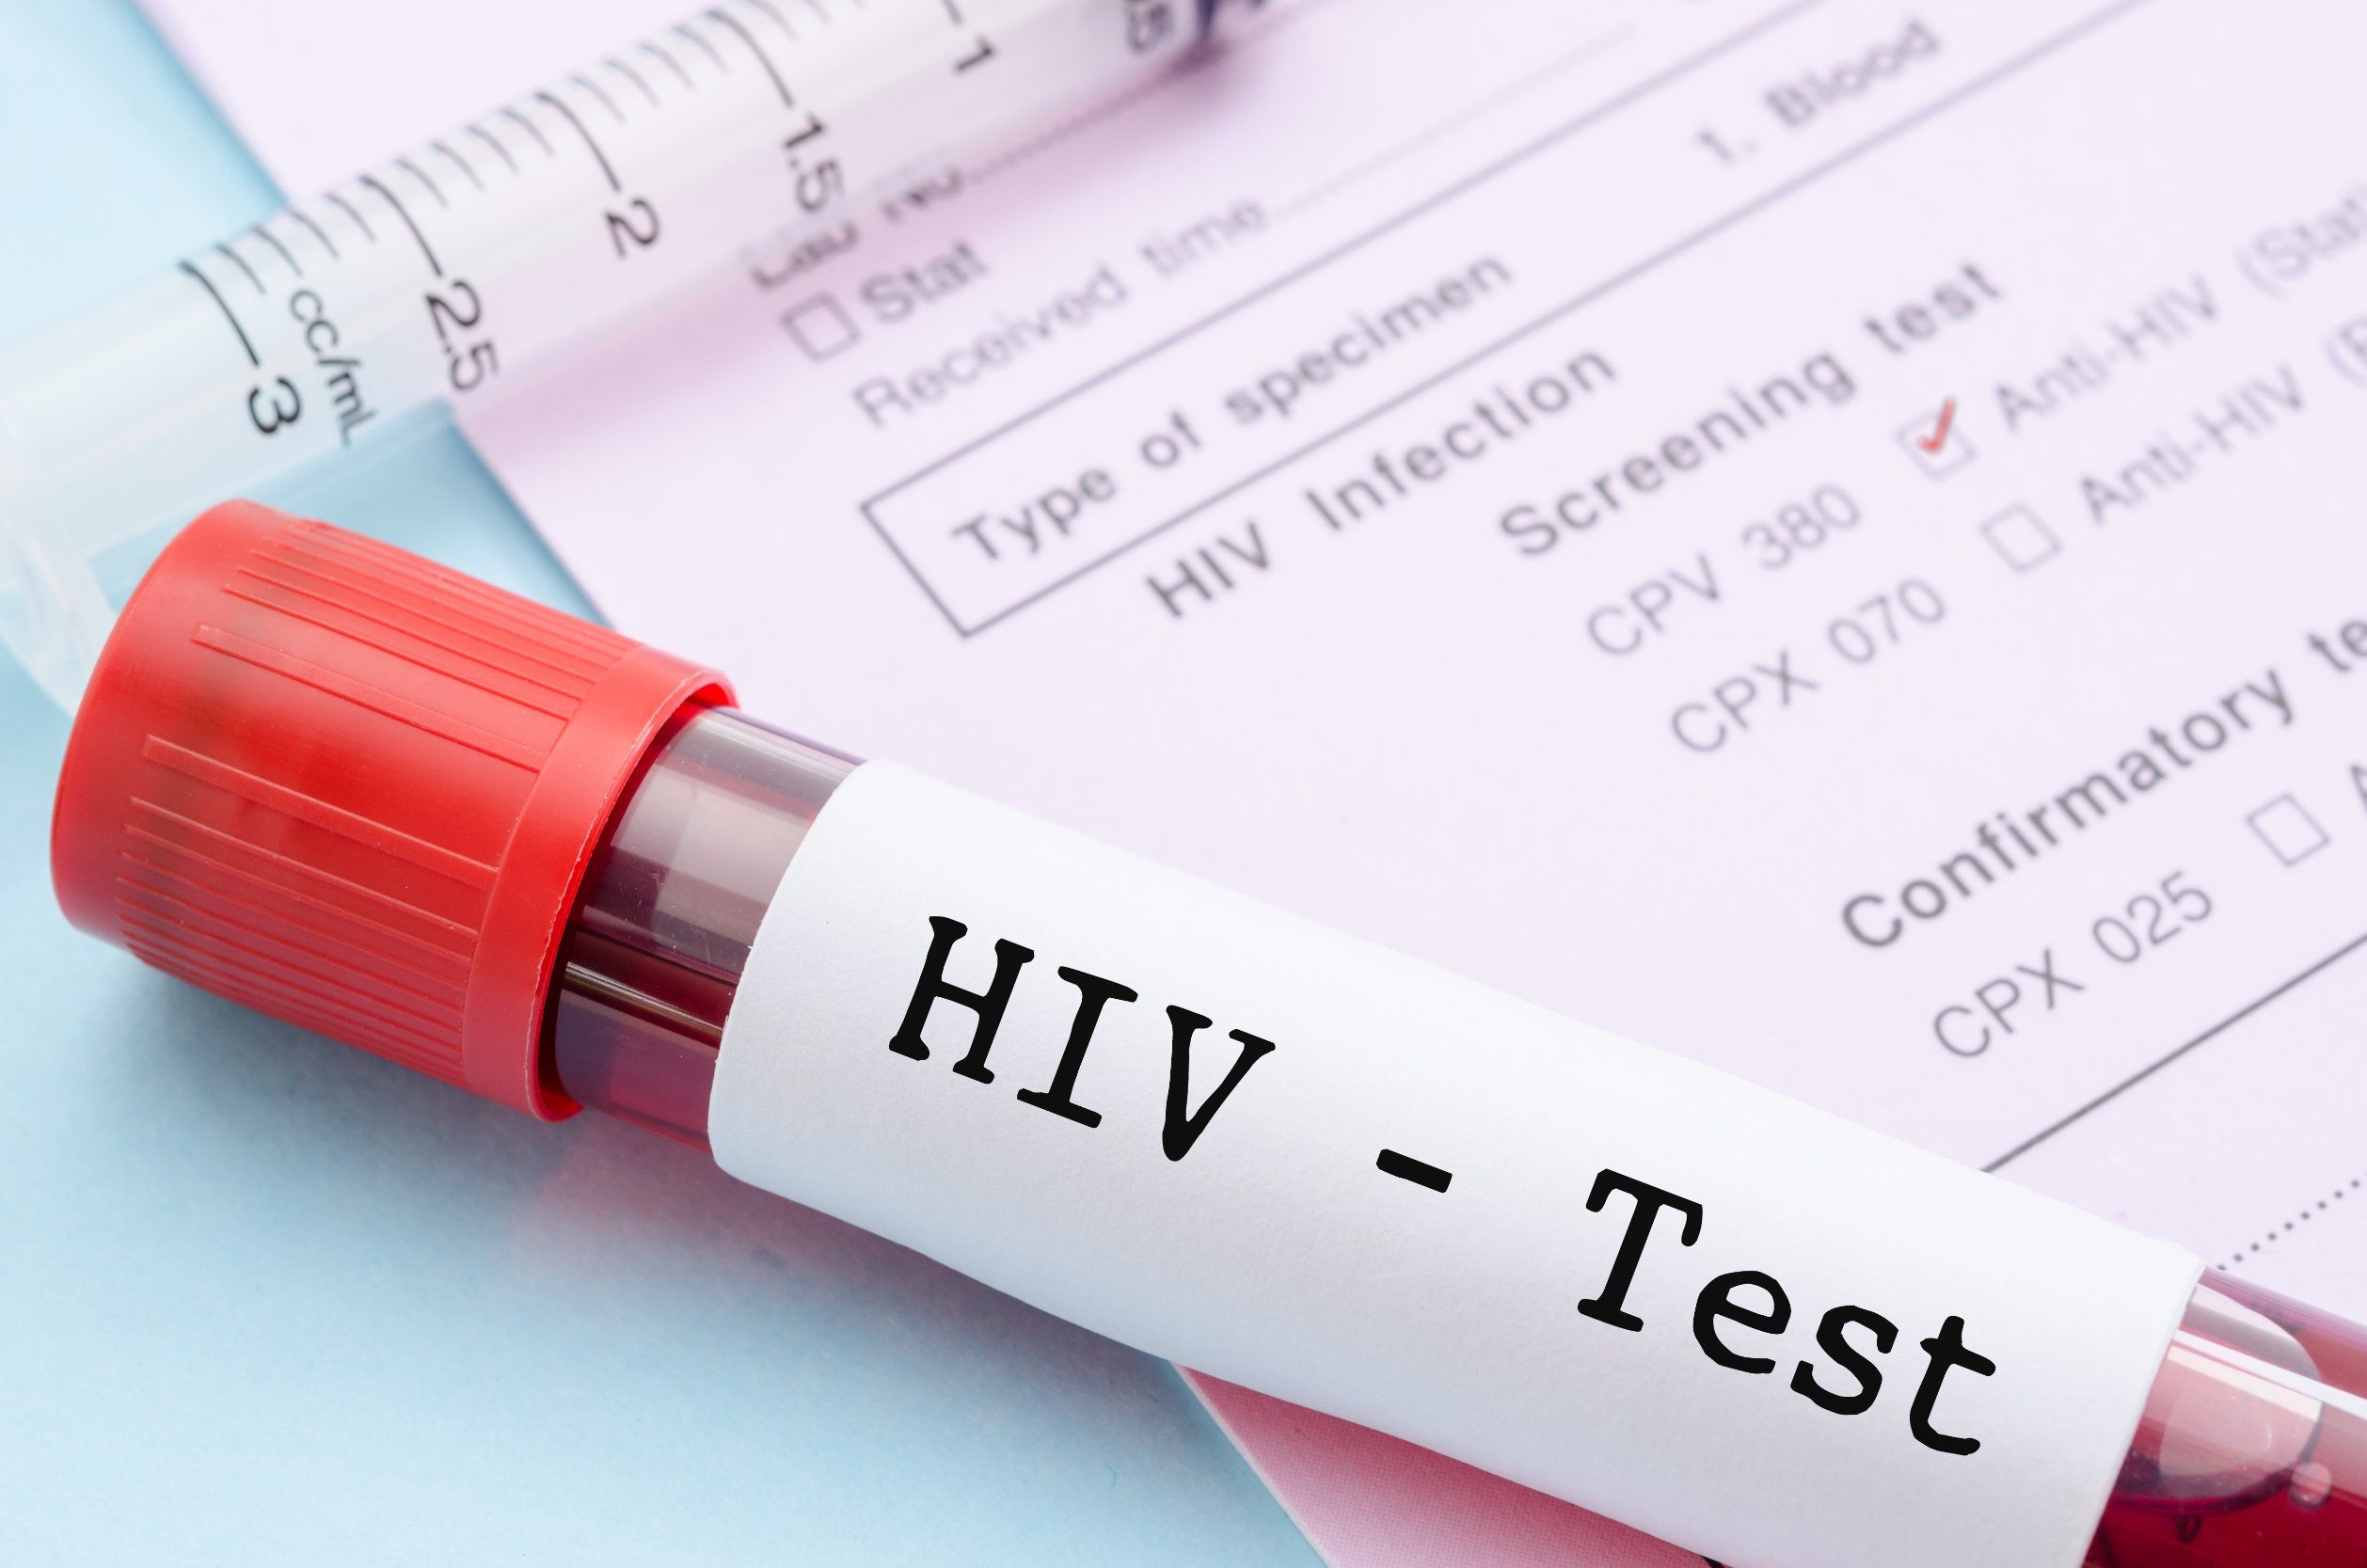 VIH: Una ‘vacuna’ accesible por solo $40 USD anuales